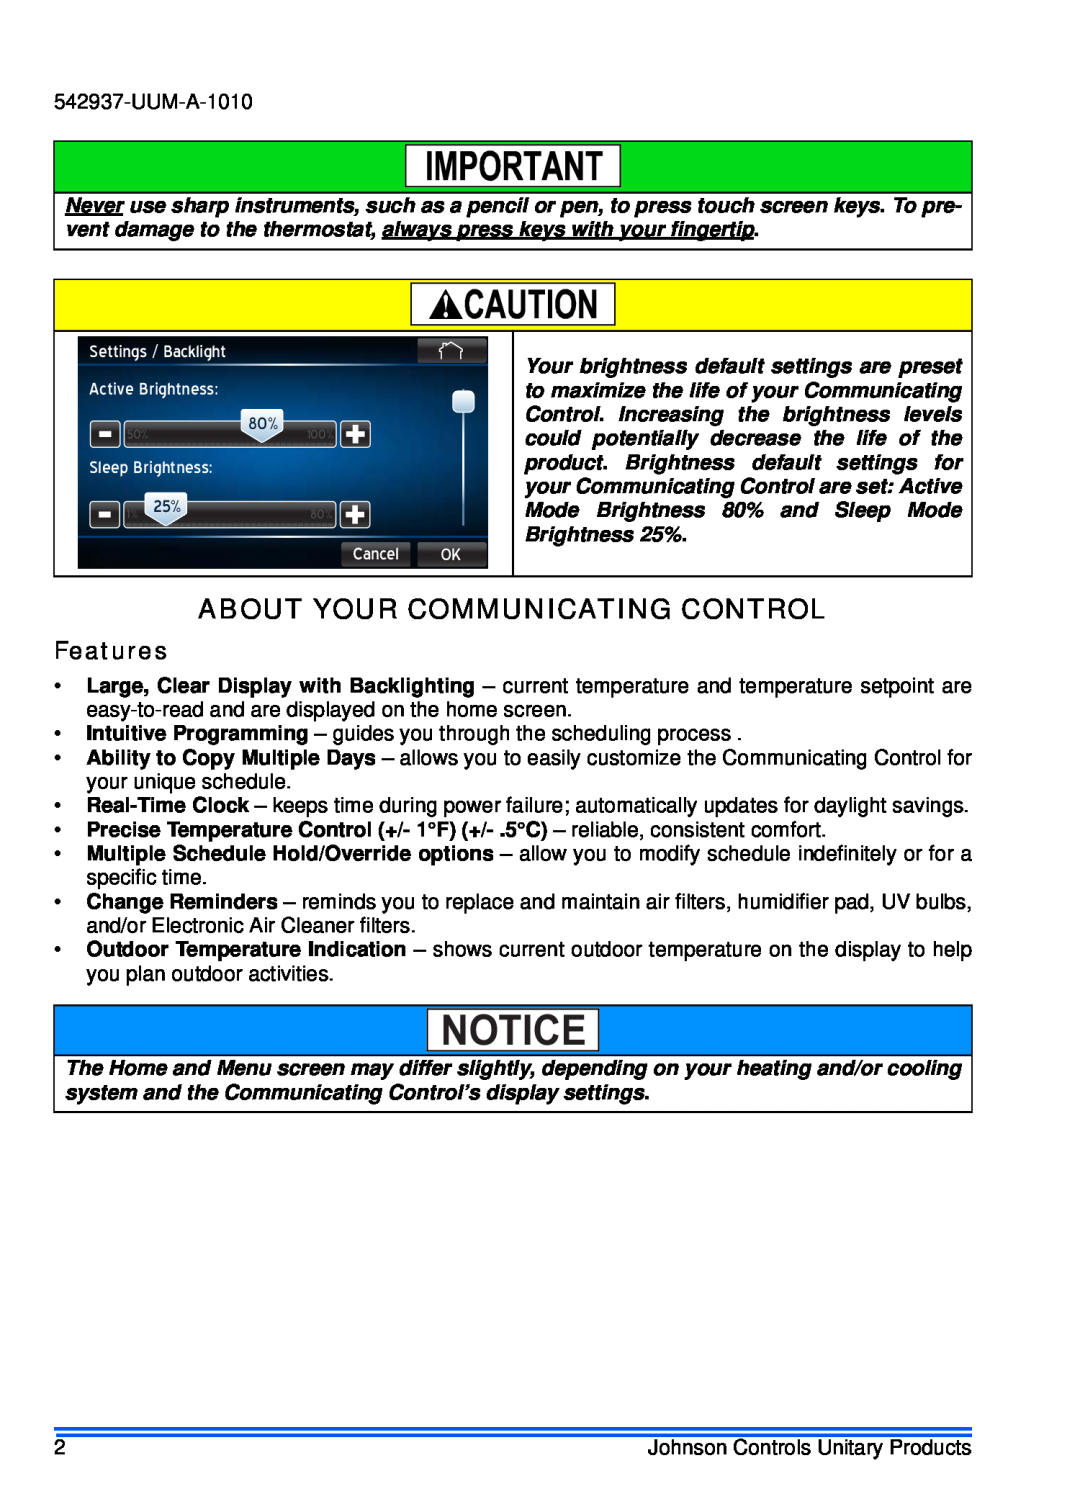 Johnson Controls S1-TTSCC01 appendix About Your Communicating Control, Features 